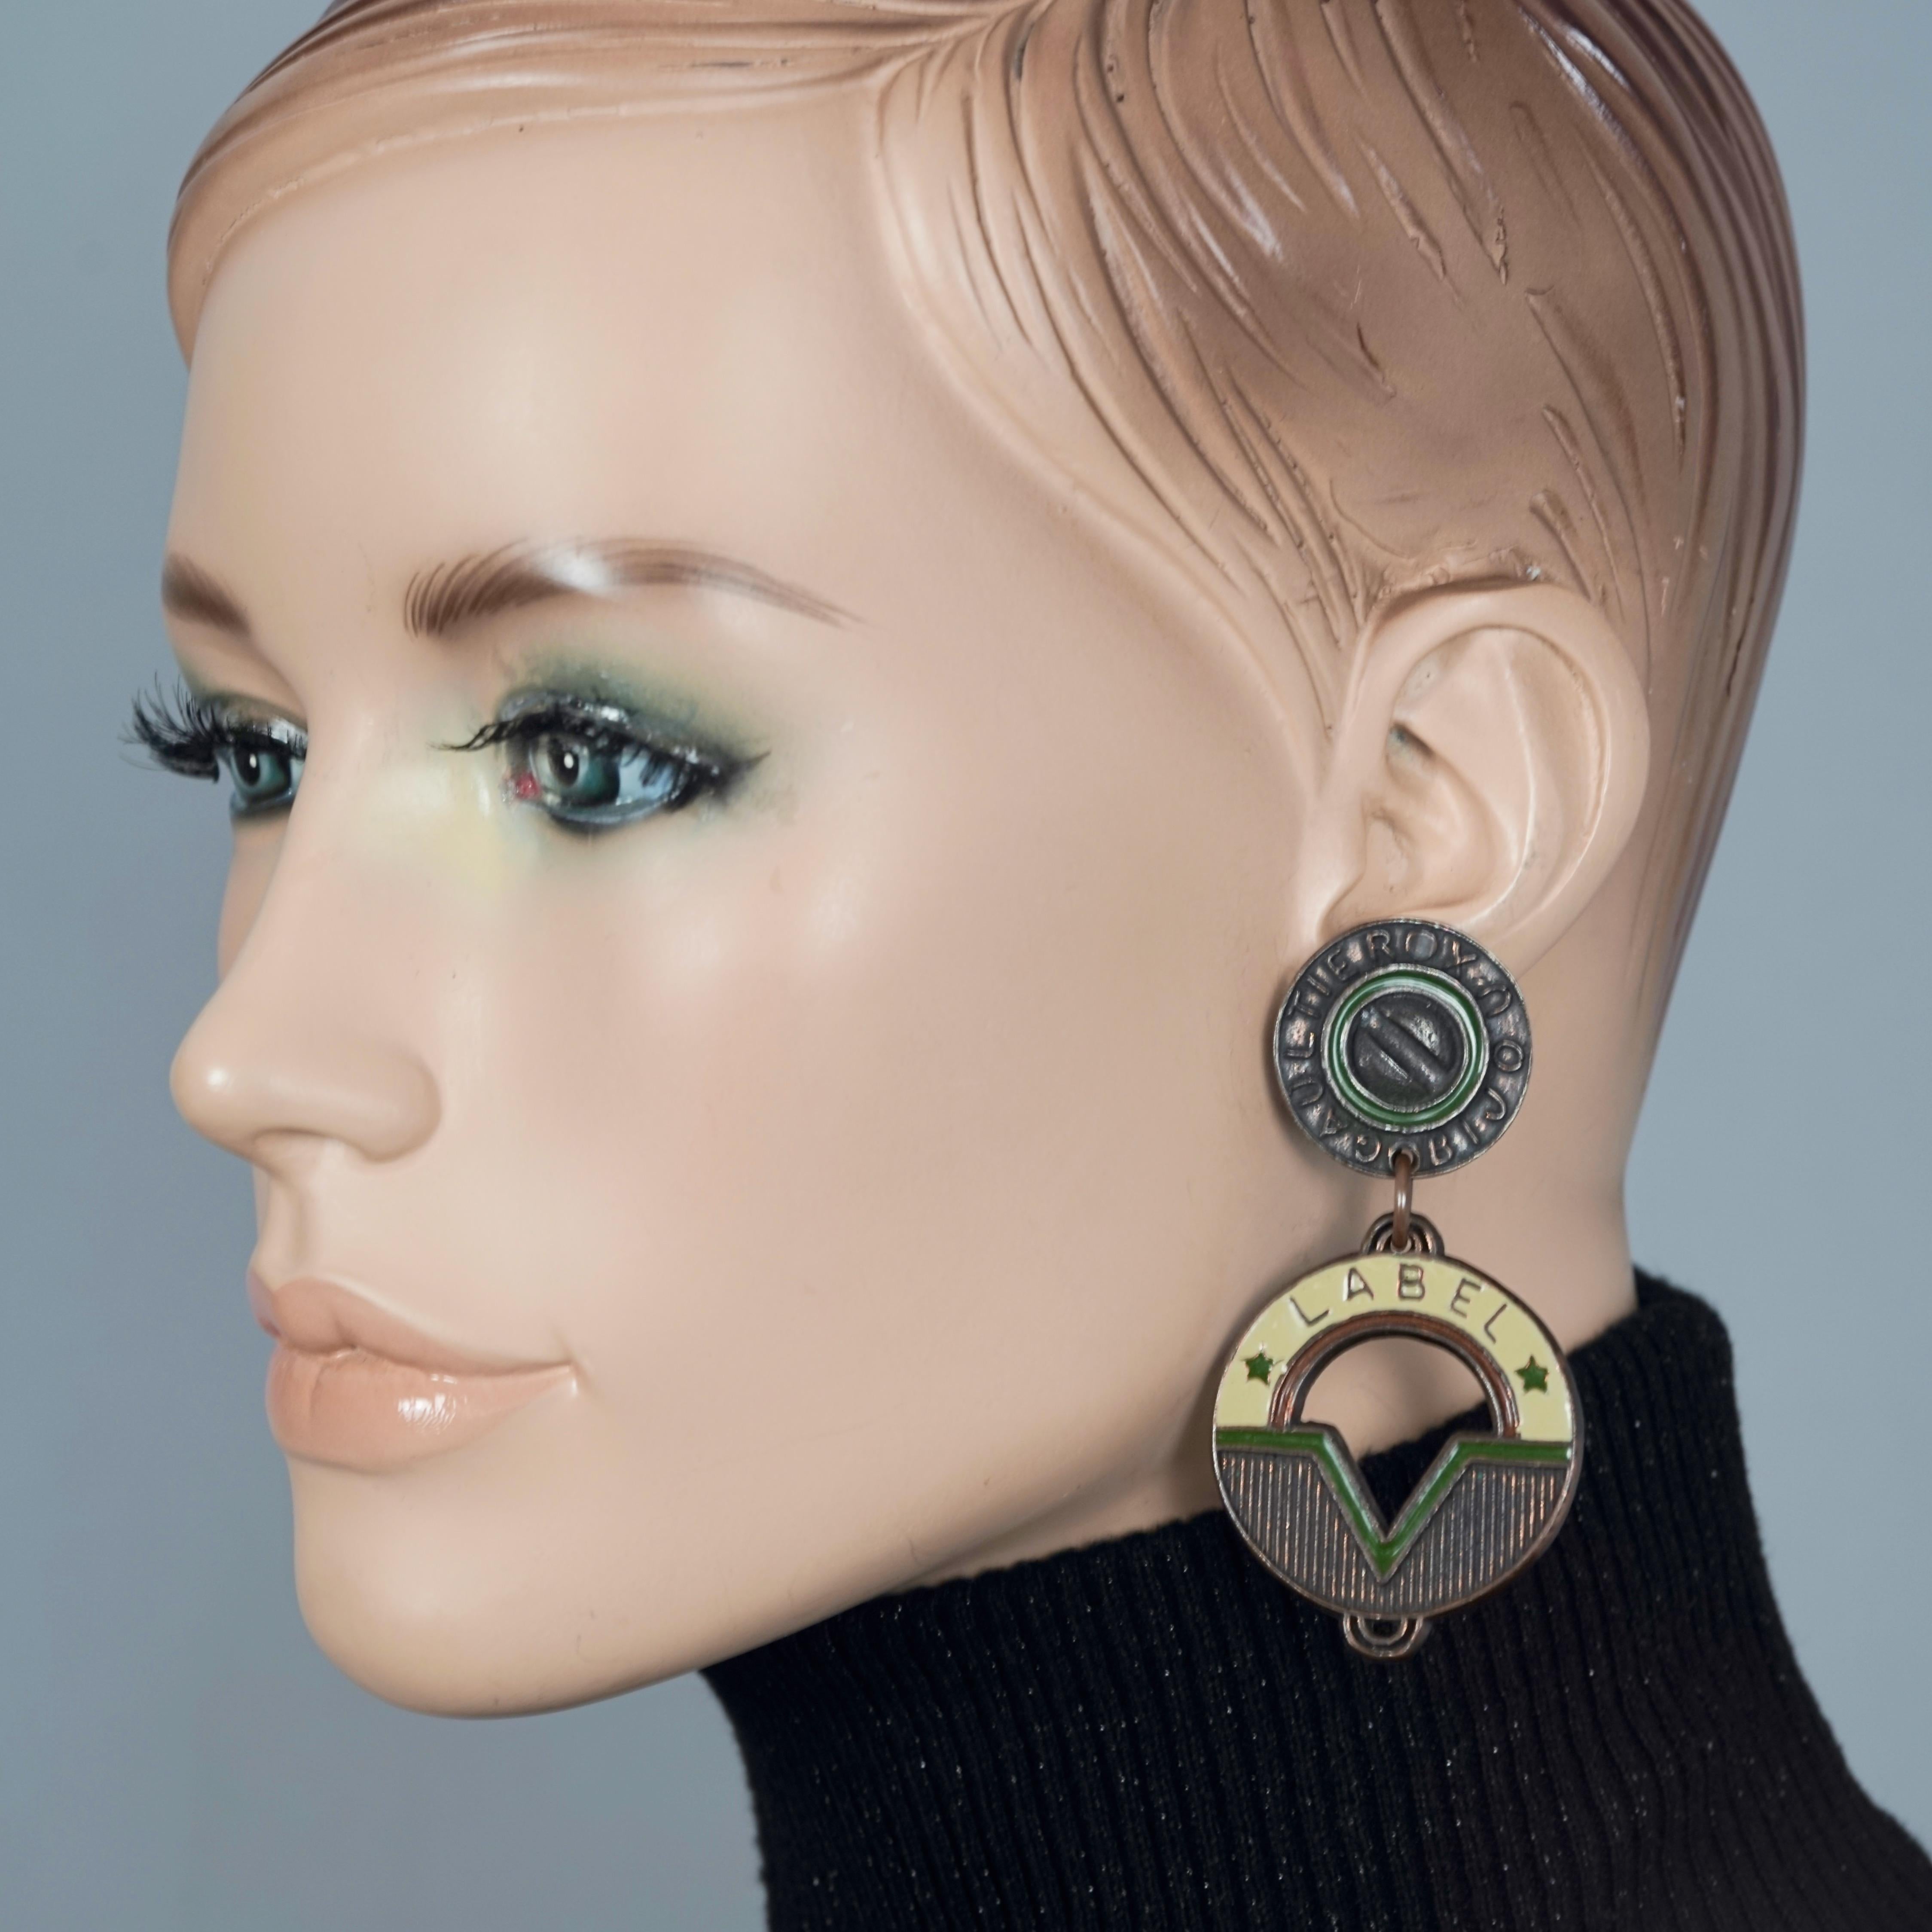 Vintage JEAN PAUL GAULTIER Bijoux Label Enamel Steampunk Earrings

Measurements:
Height: 2.95 inches (7.5 cm)
Width: 1.96 inches (5 cm)
Weight per Earring: 23 grams

Features:
- 100% Authentic JEAN PAUL GAULTIER.
- Dangling Strampunk enamel earrings